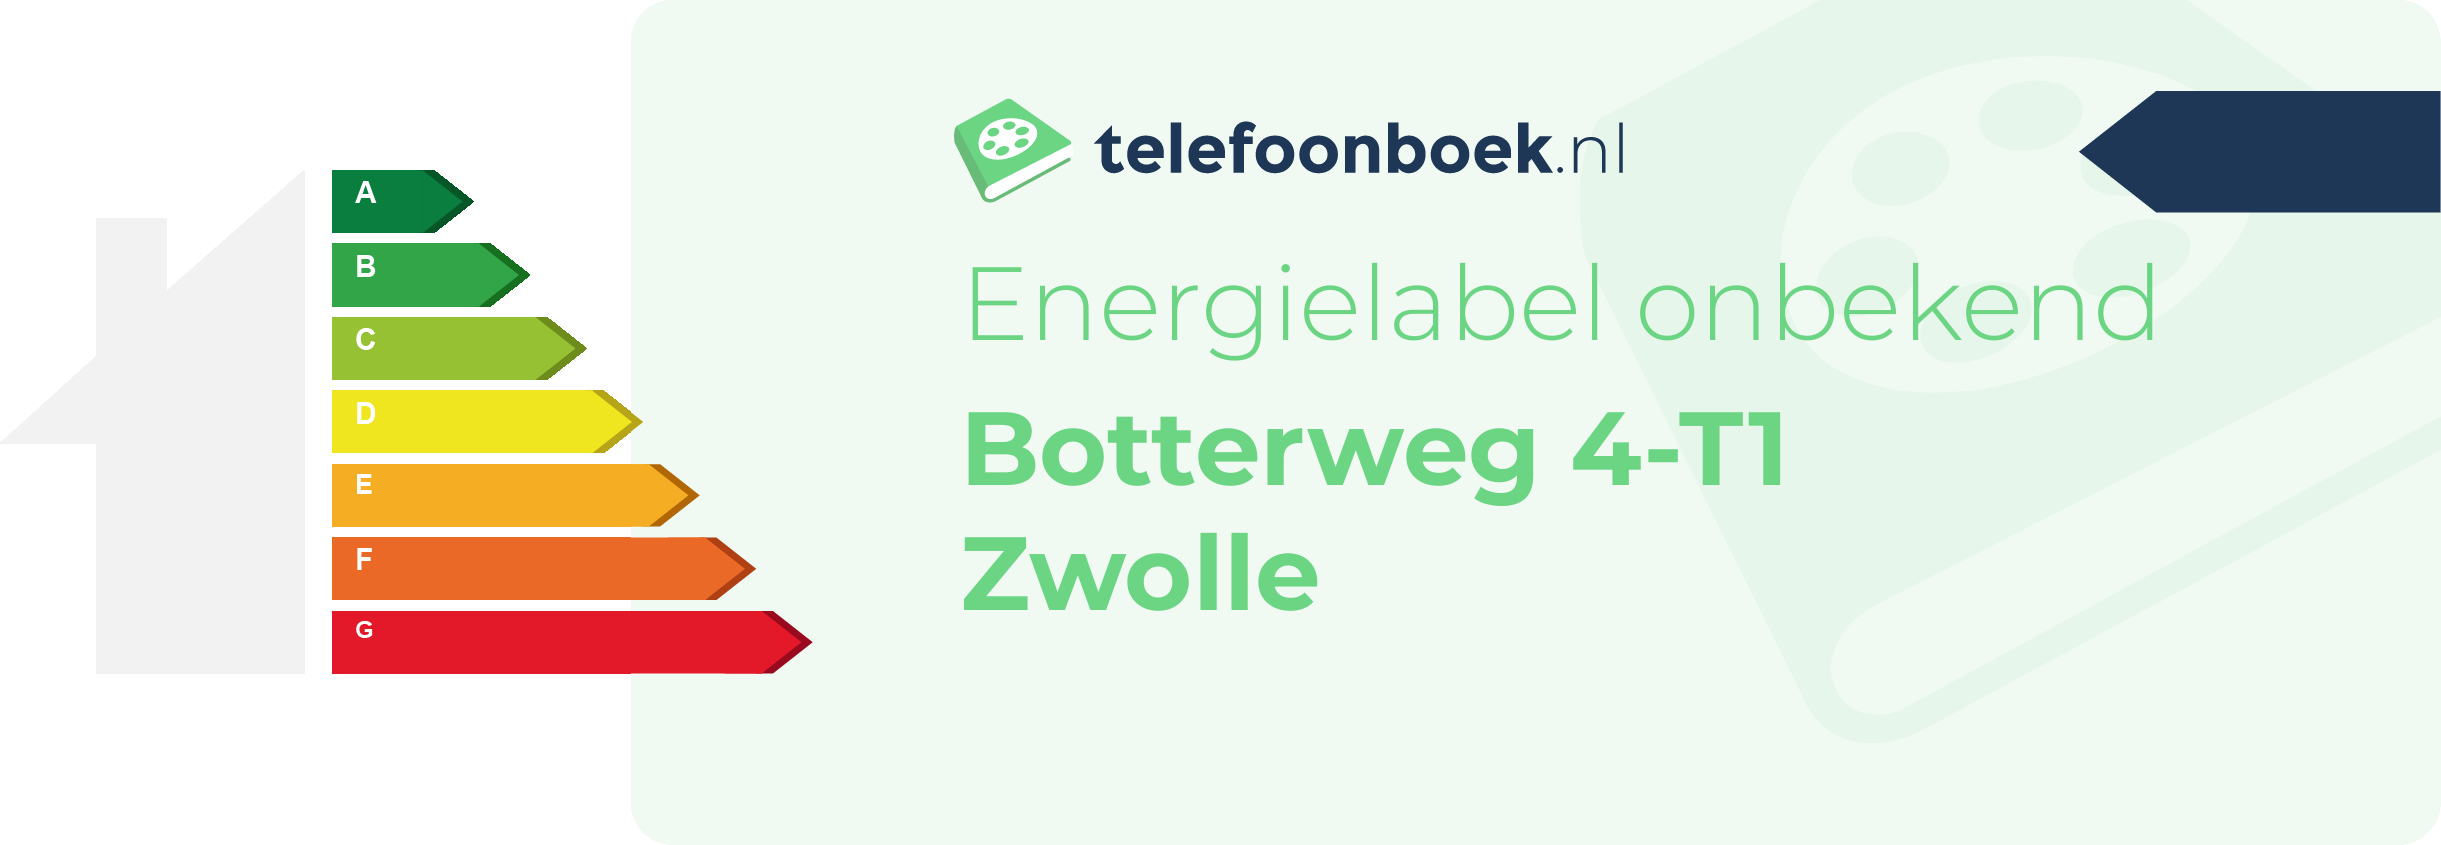 Energielabel Botterweg 4-T1 Zwolle